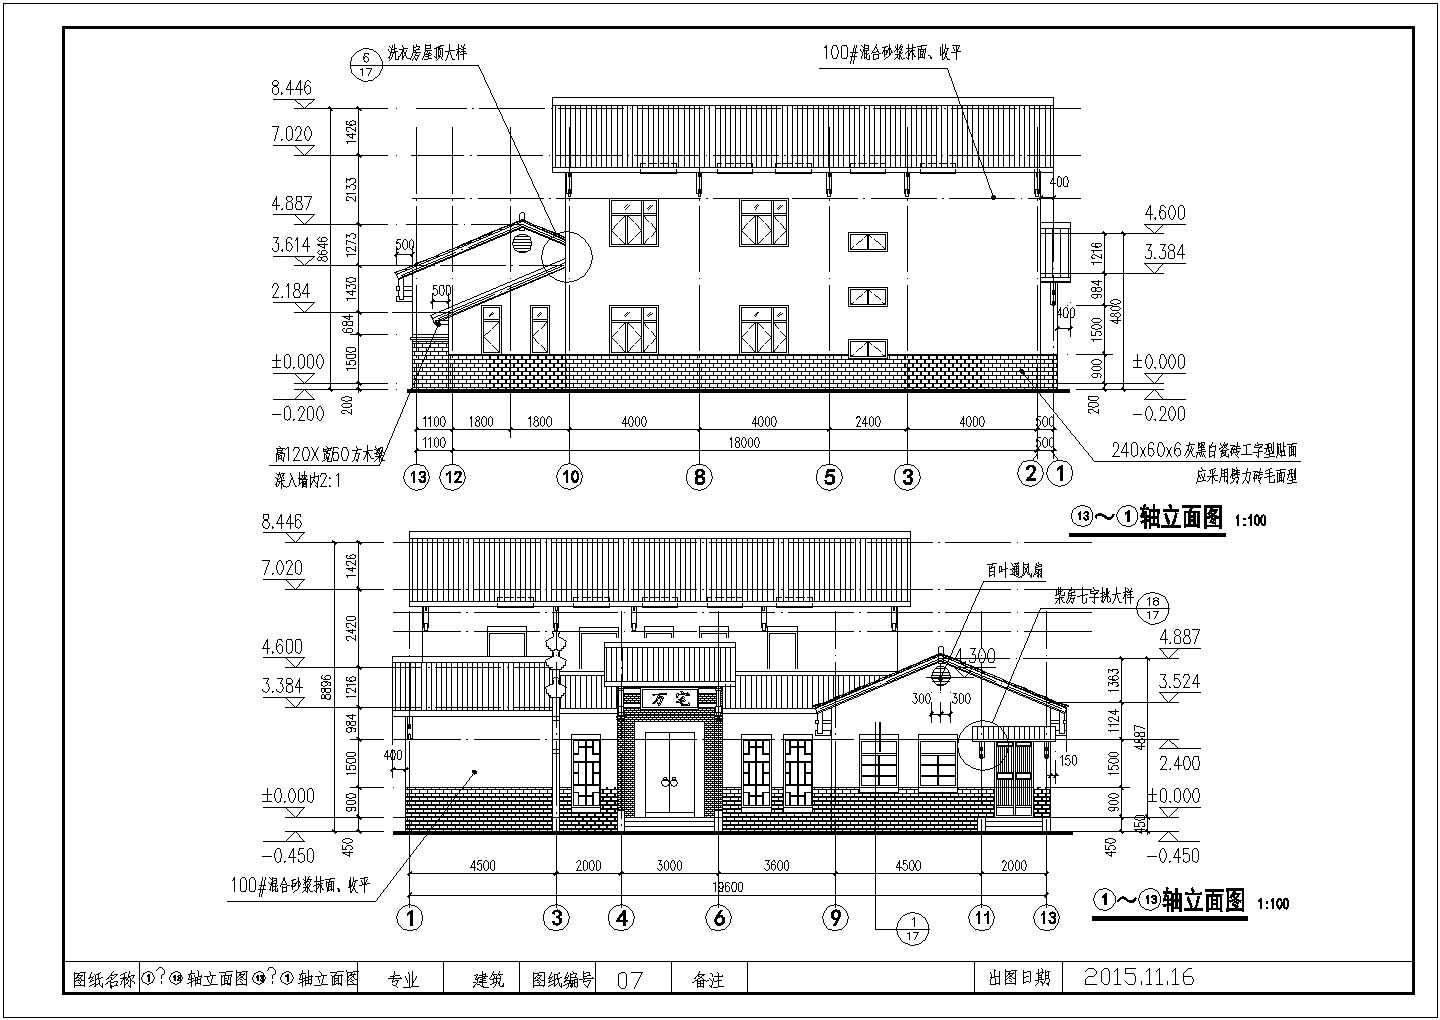 中式古朴风格二层农村房屋建筑设计图